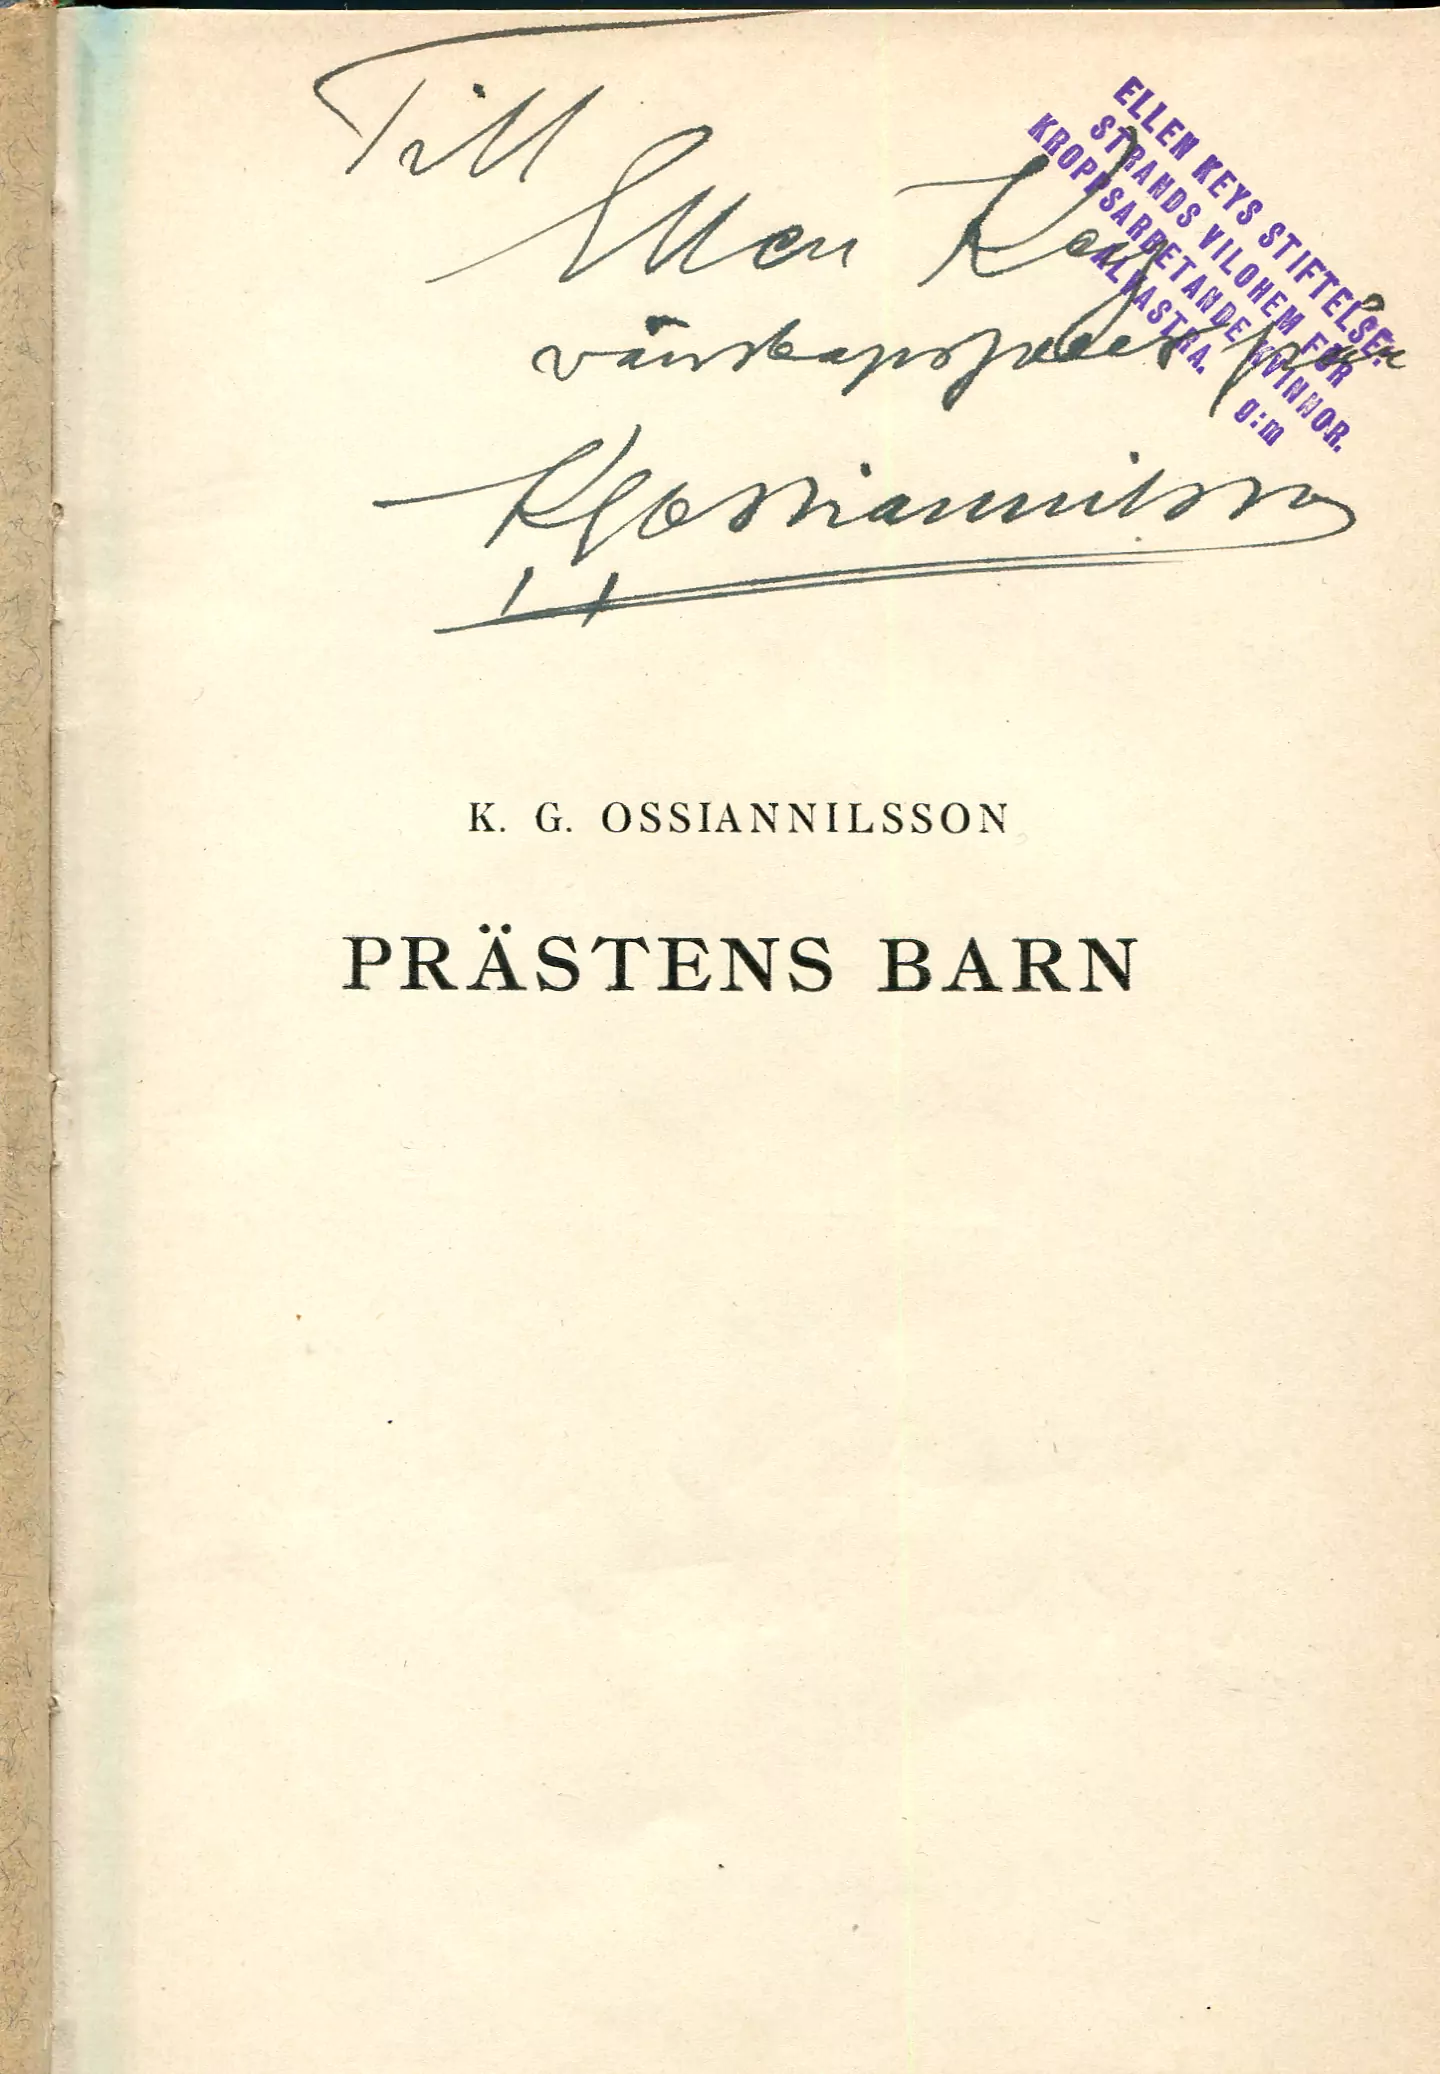 Prästens barn , Stockholm 1916